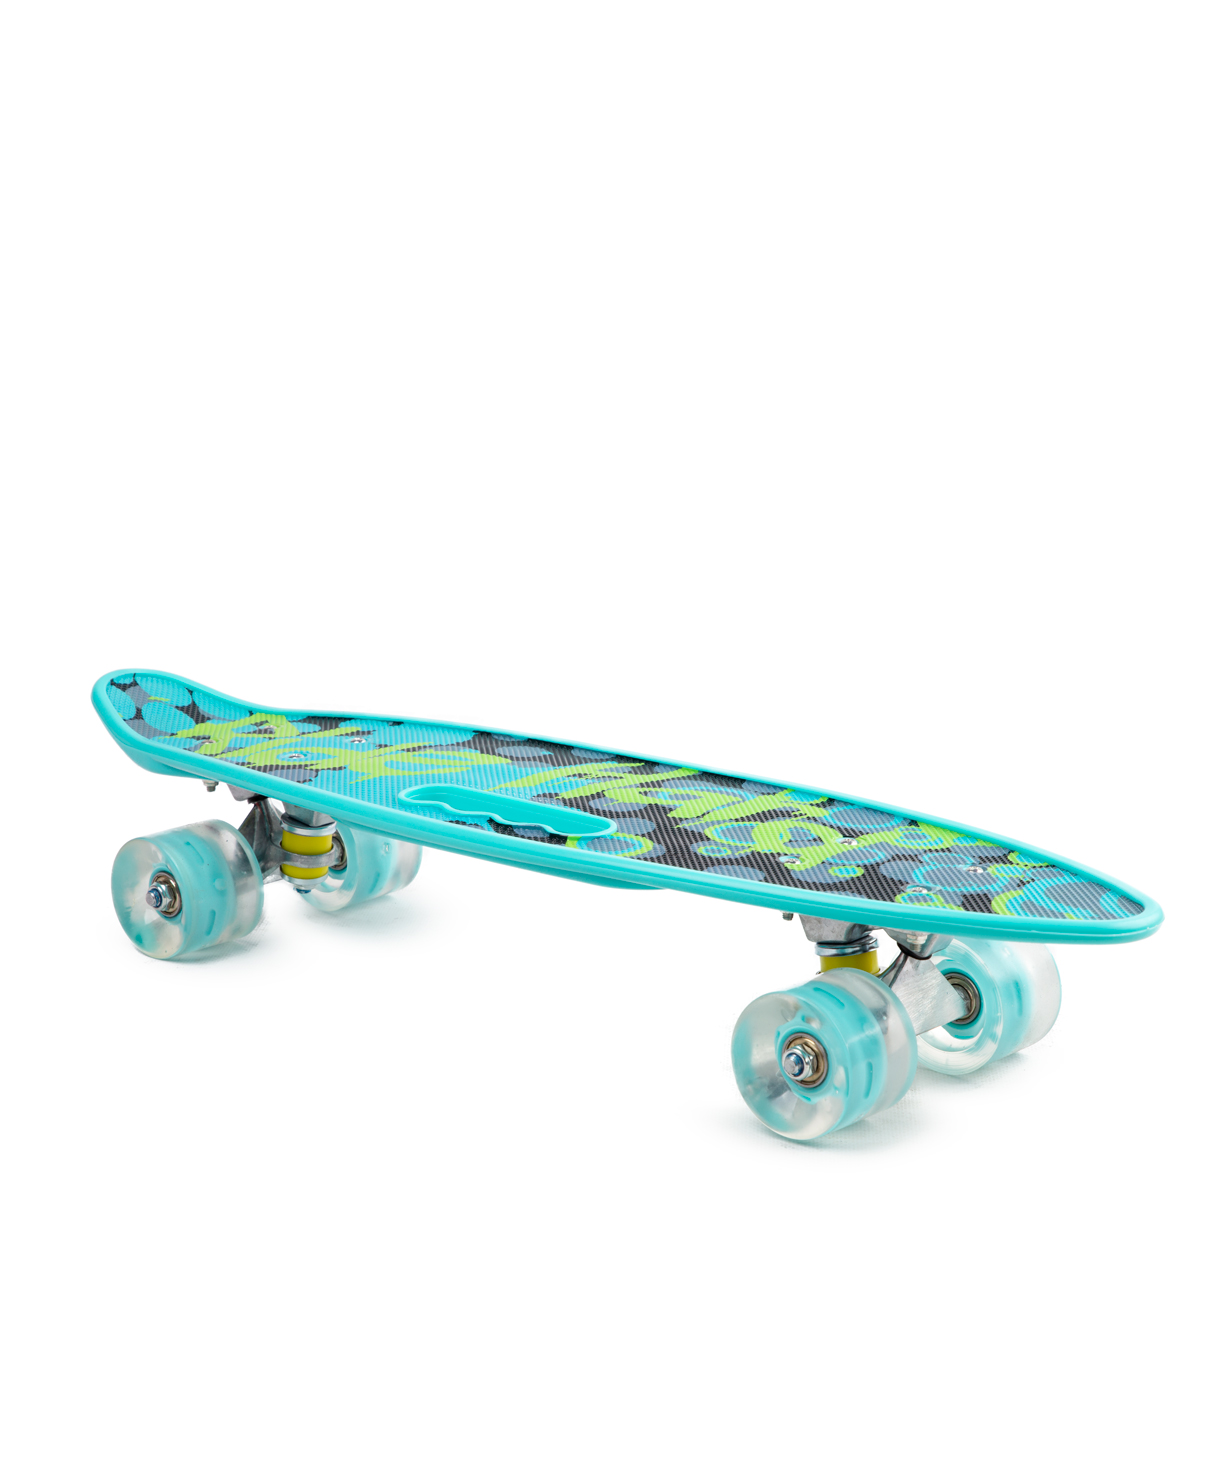 Skateboard PE-21210 №17